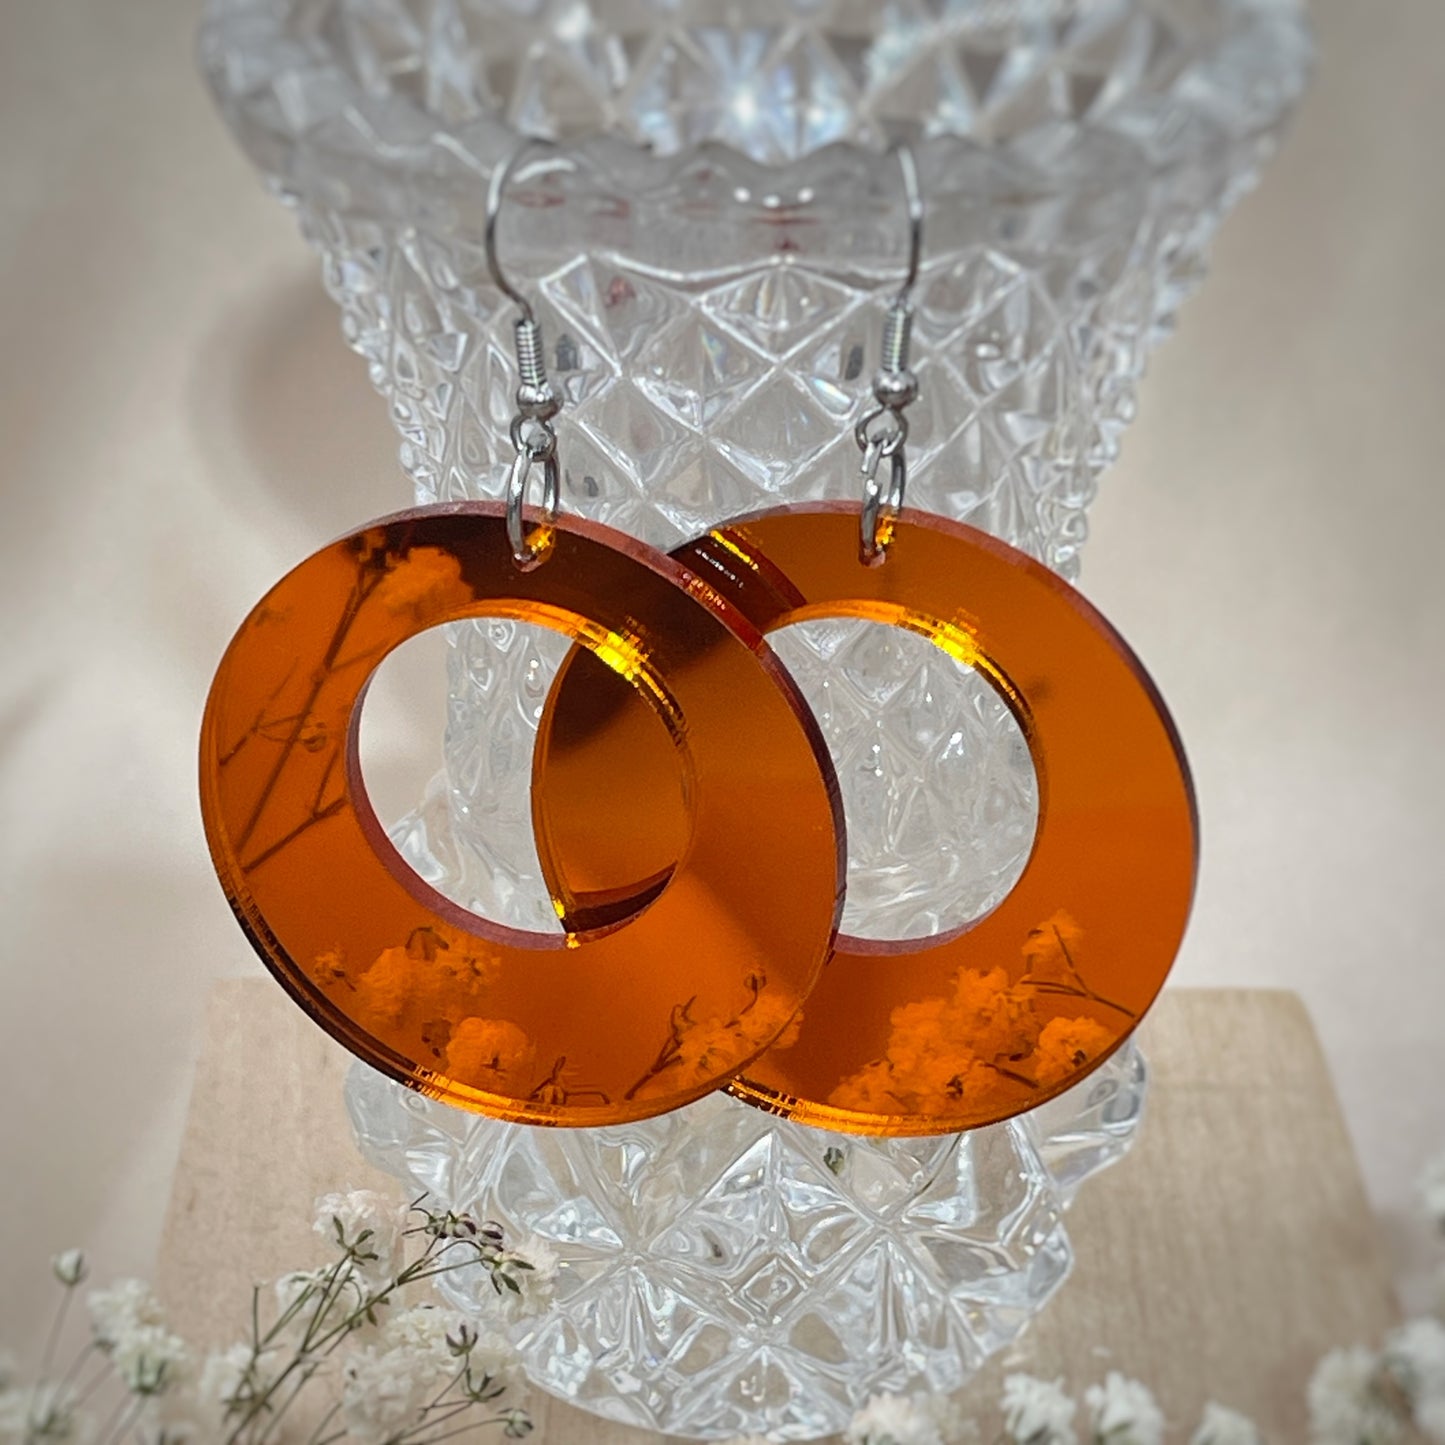 Kauniisti valoa heijastavat peilikorvakorut ovat laadukasta suomalaista käsityötä, ja ne ovat kevyet pitää korvassa. Värivaihtoehtoja löytyy useita, joten jokaista asukokonaisuutta ja tilaisuutta täydentävä korupari löytyy varmasti. Tämä koru on oranssi.